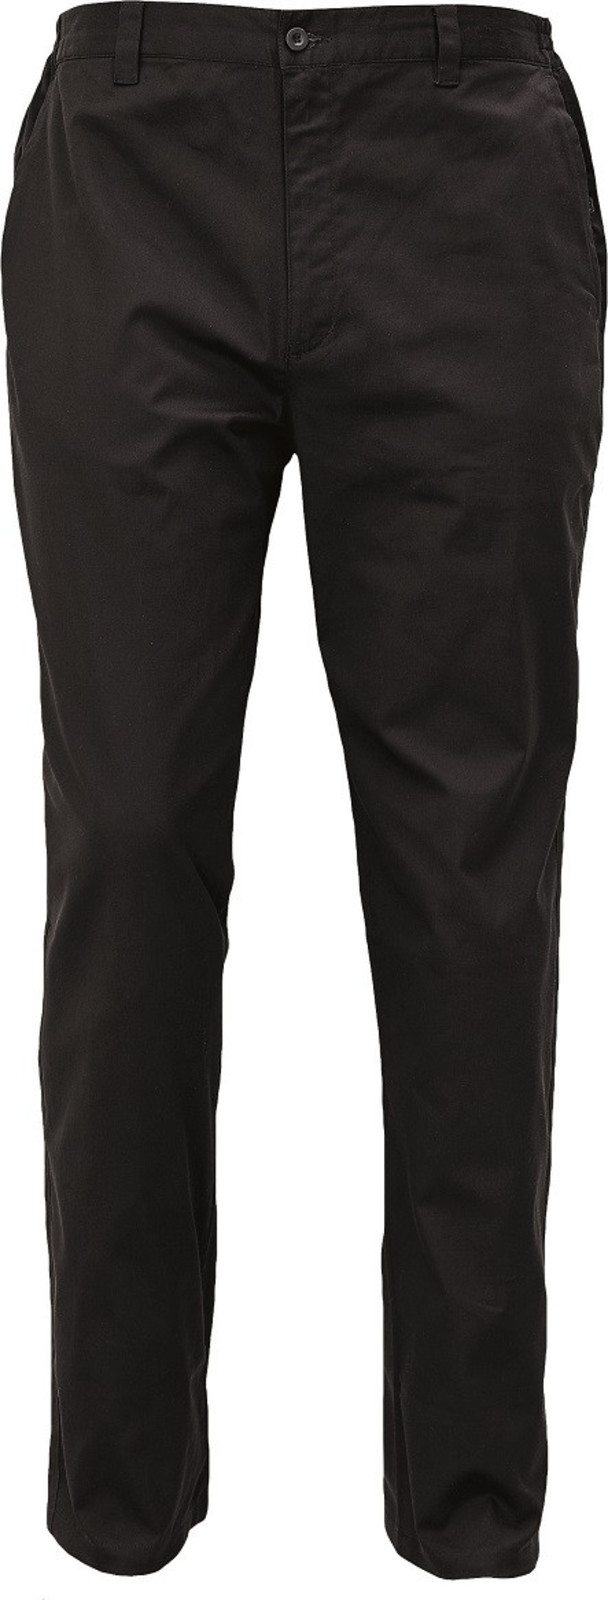 Voľnočasové nohavice Lagan pánske - veľkosť: 58, farba: čierna